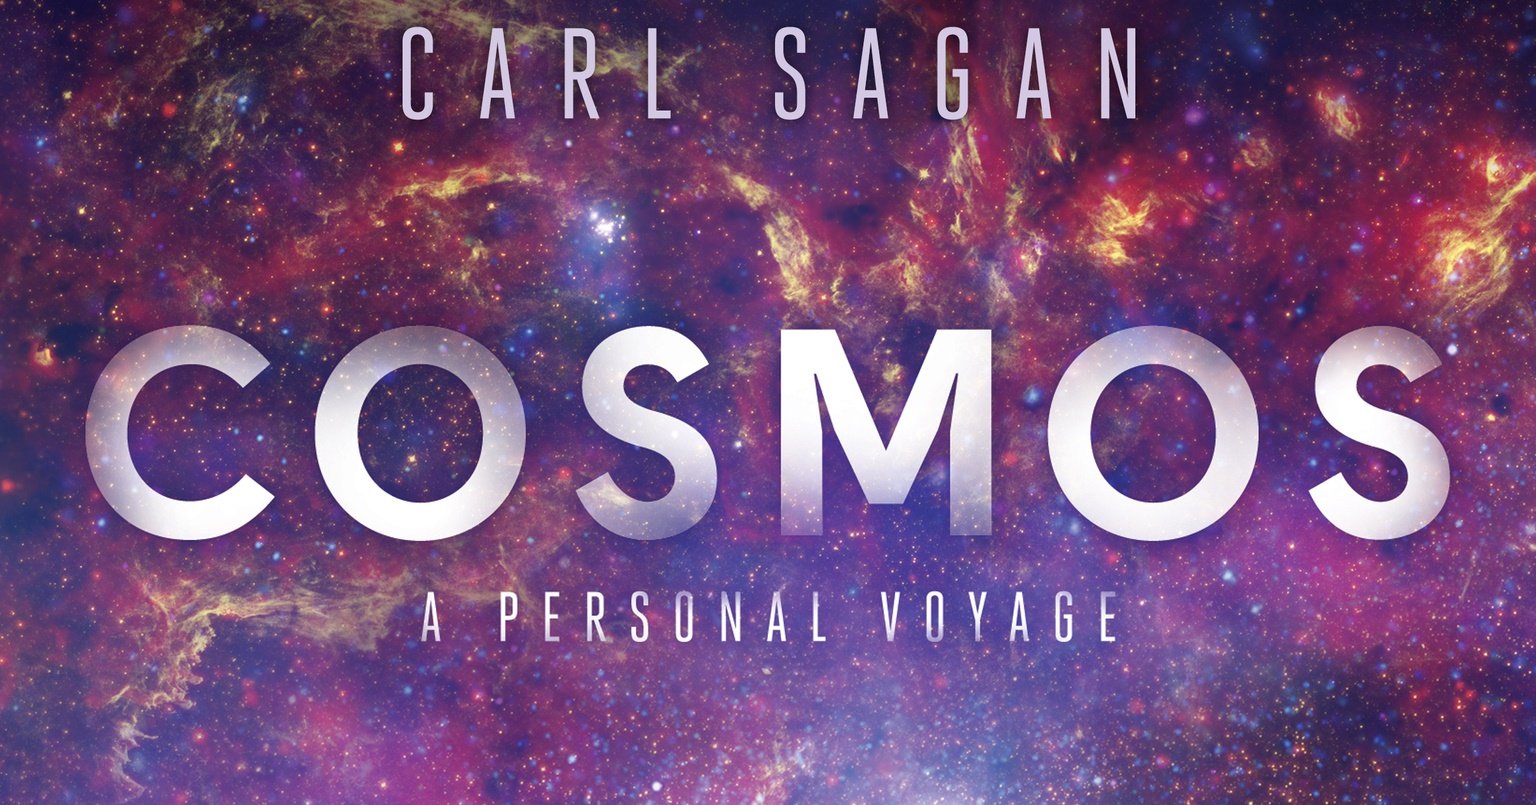 Carl Sagan's Cosmos: A Personal Voyage (1980)